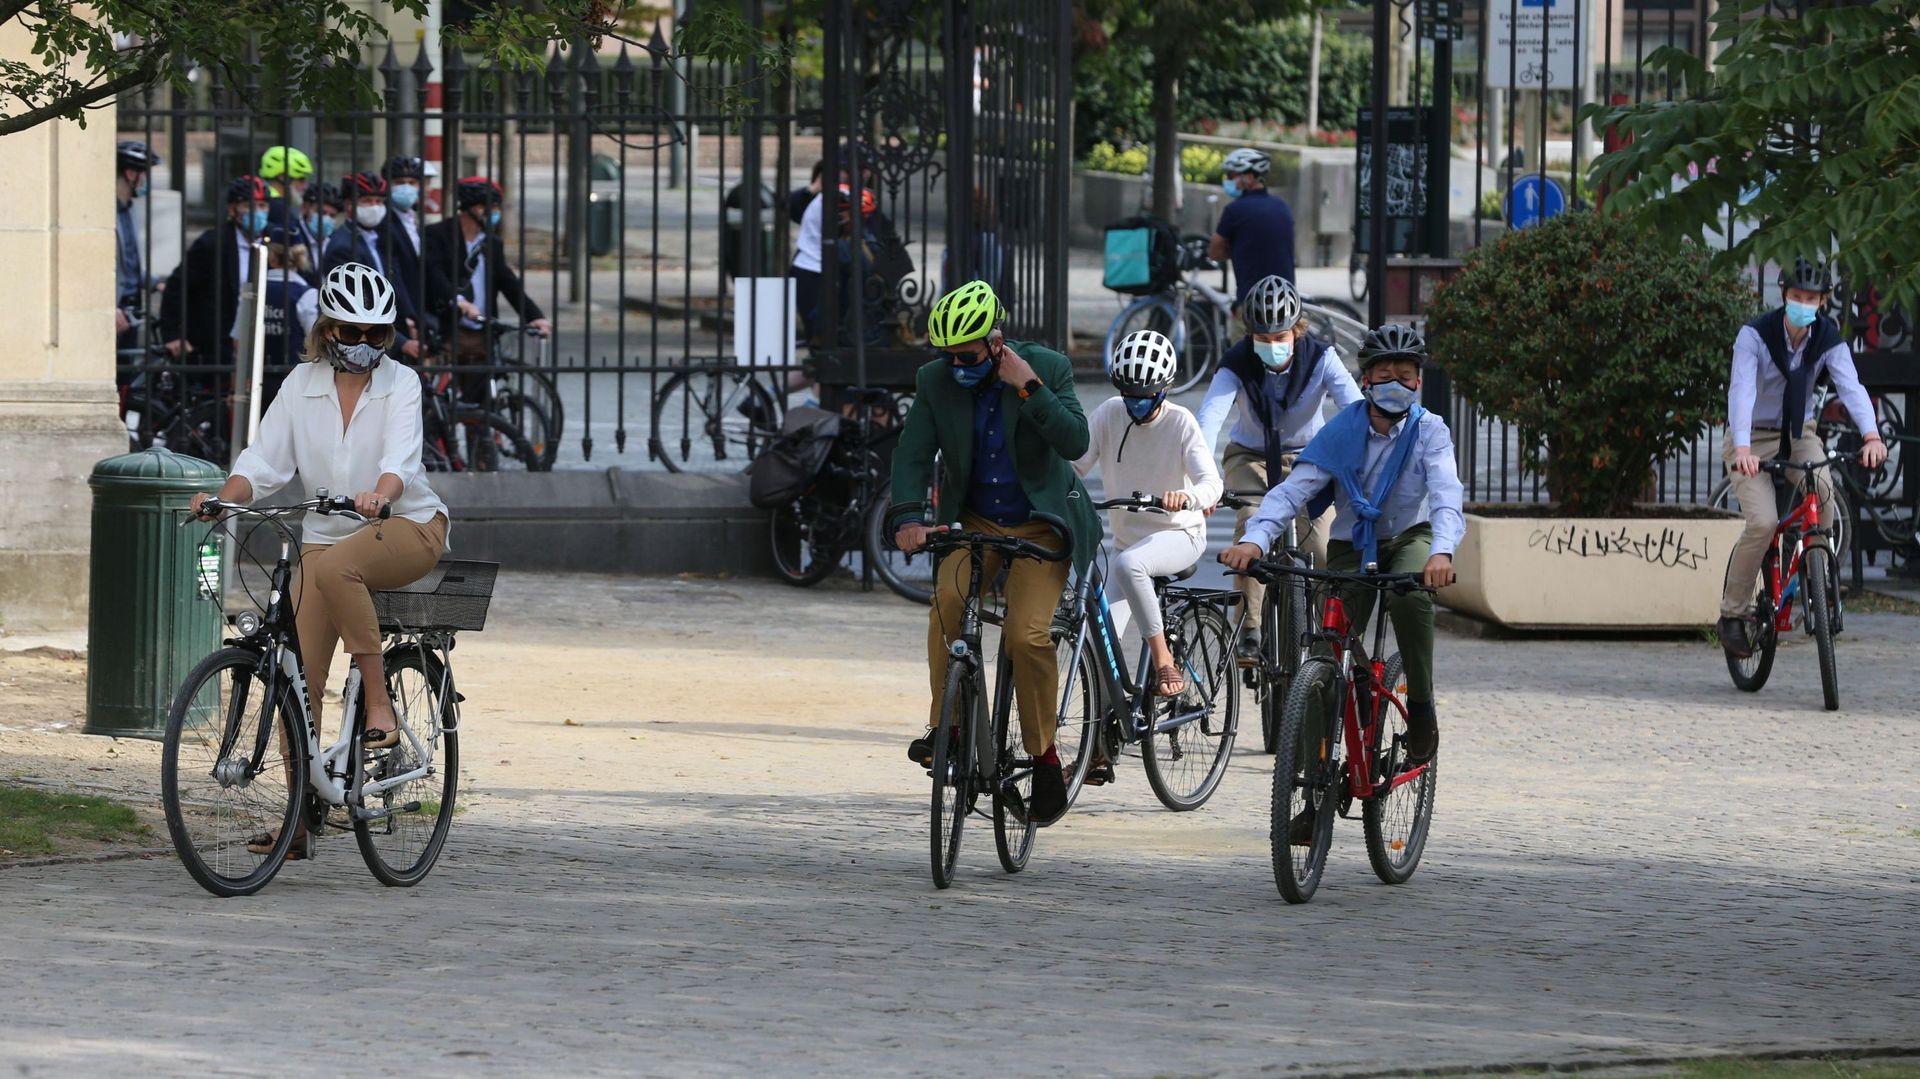 Journée sans voiture à Bruxelles: la famille royale fait un tour à vélo dans les rues de la capitale